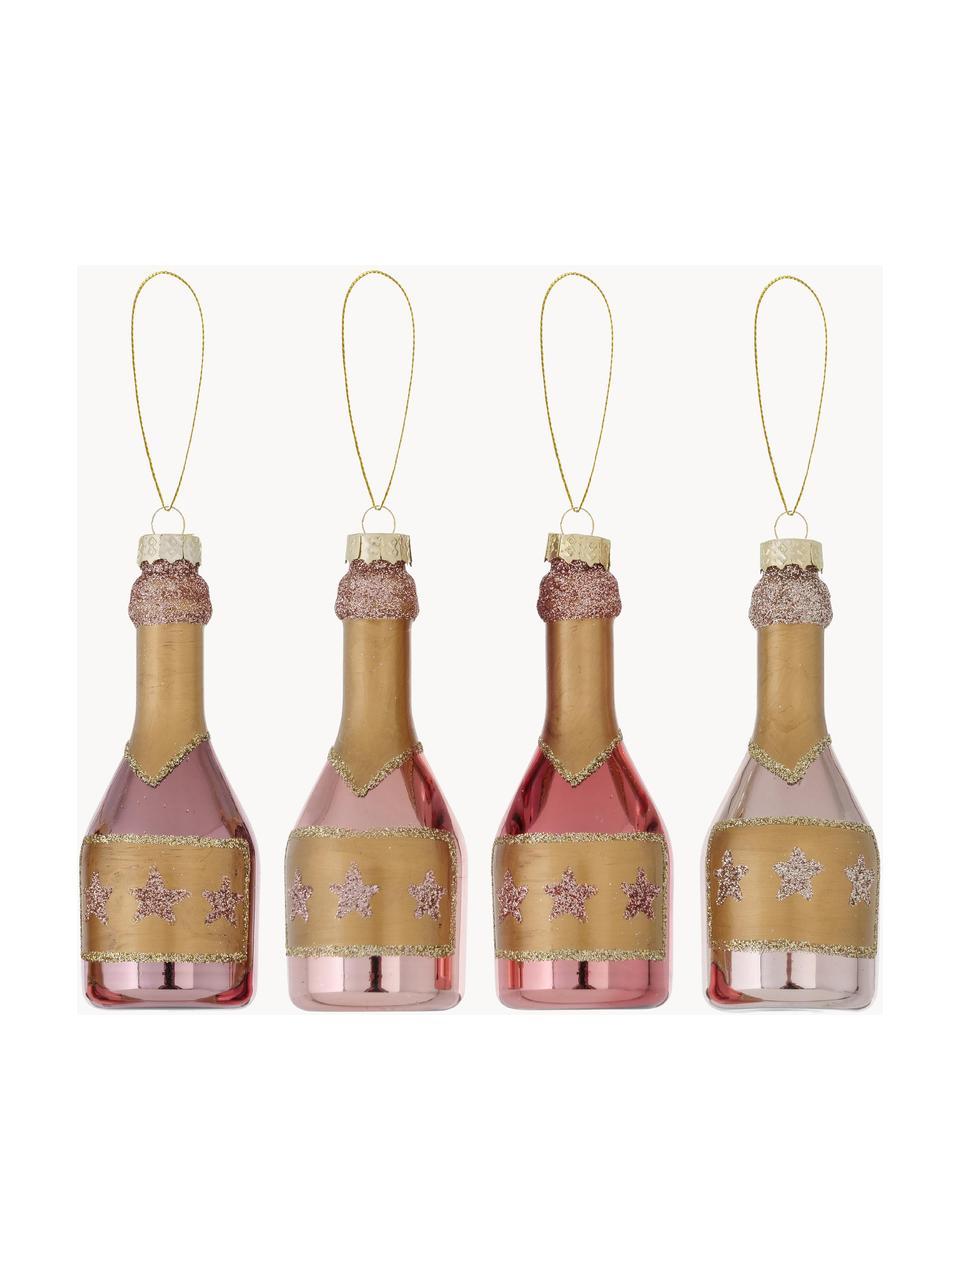 Adornos navideños Champagne, 4 uds., Adornos: vidrio, Tonos rosas, dorado, Ø 4 x Al 10 cm